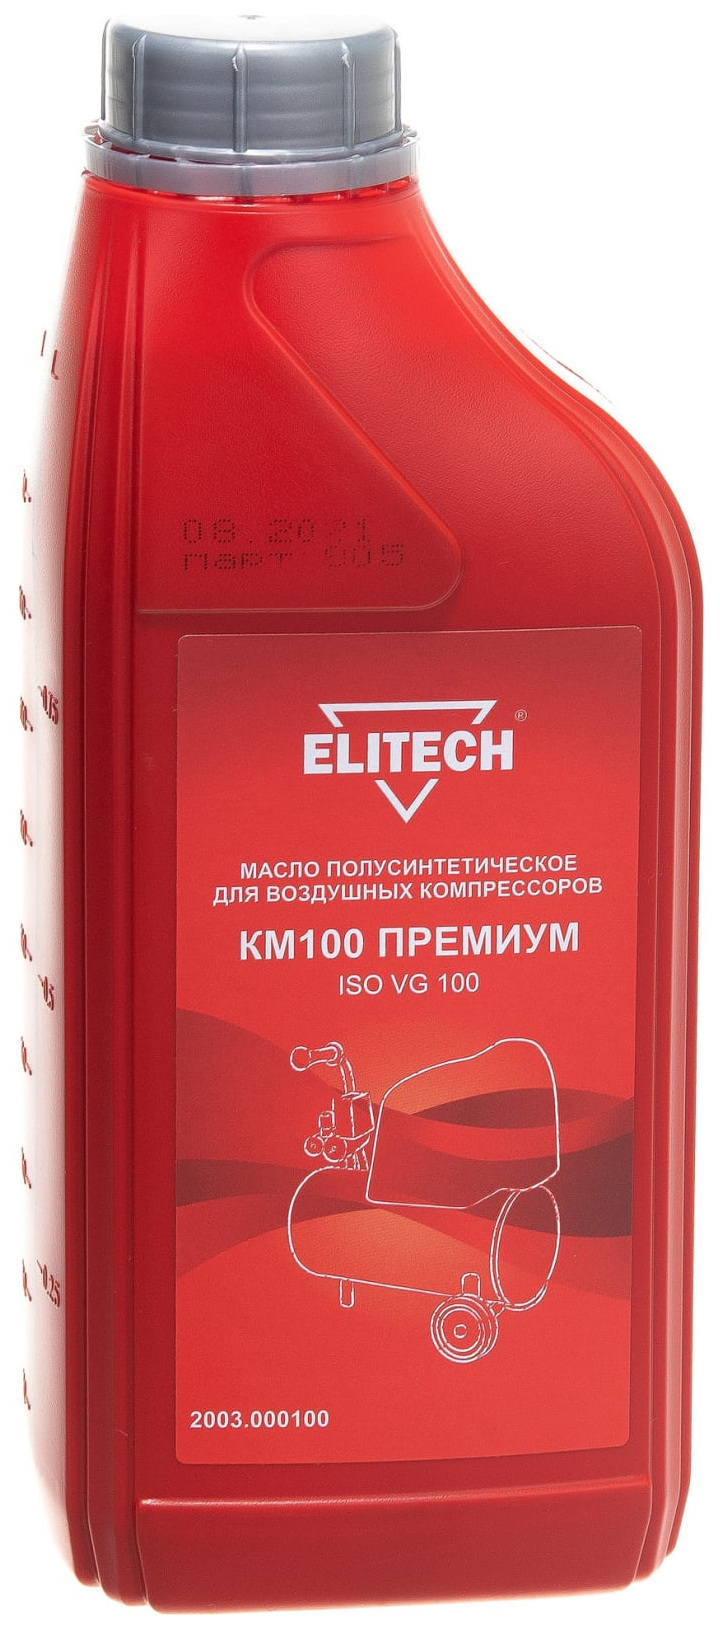 Масло полусинтетическое КМ100 (1 л) для воздушных компрессоров Elitech 2003.000100 масло компрессорное полусинтетическое км100 1л 10 энкор нанотек км премиум 40612